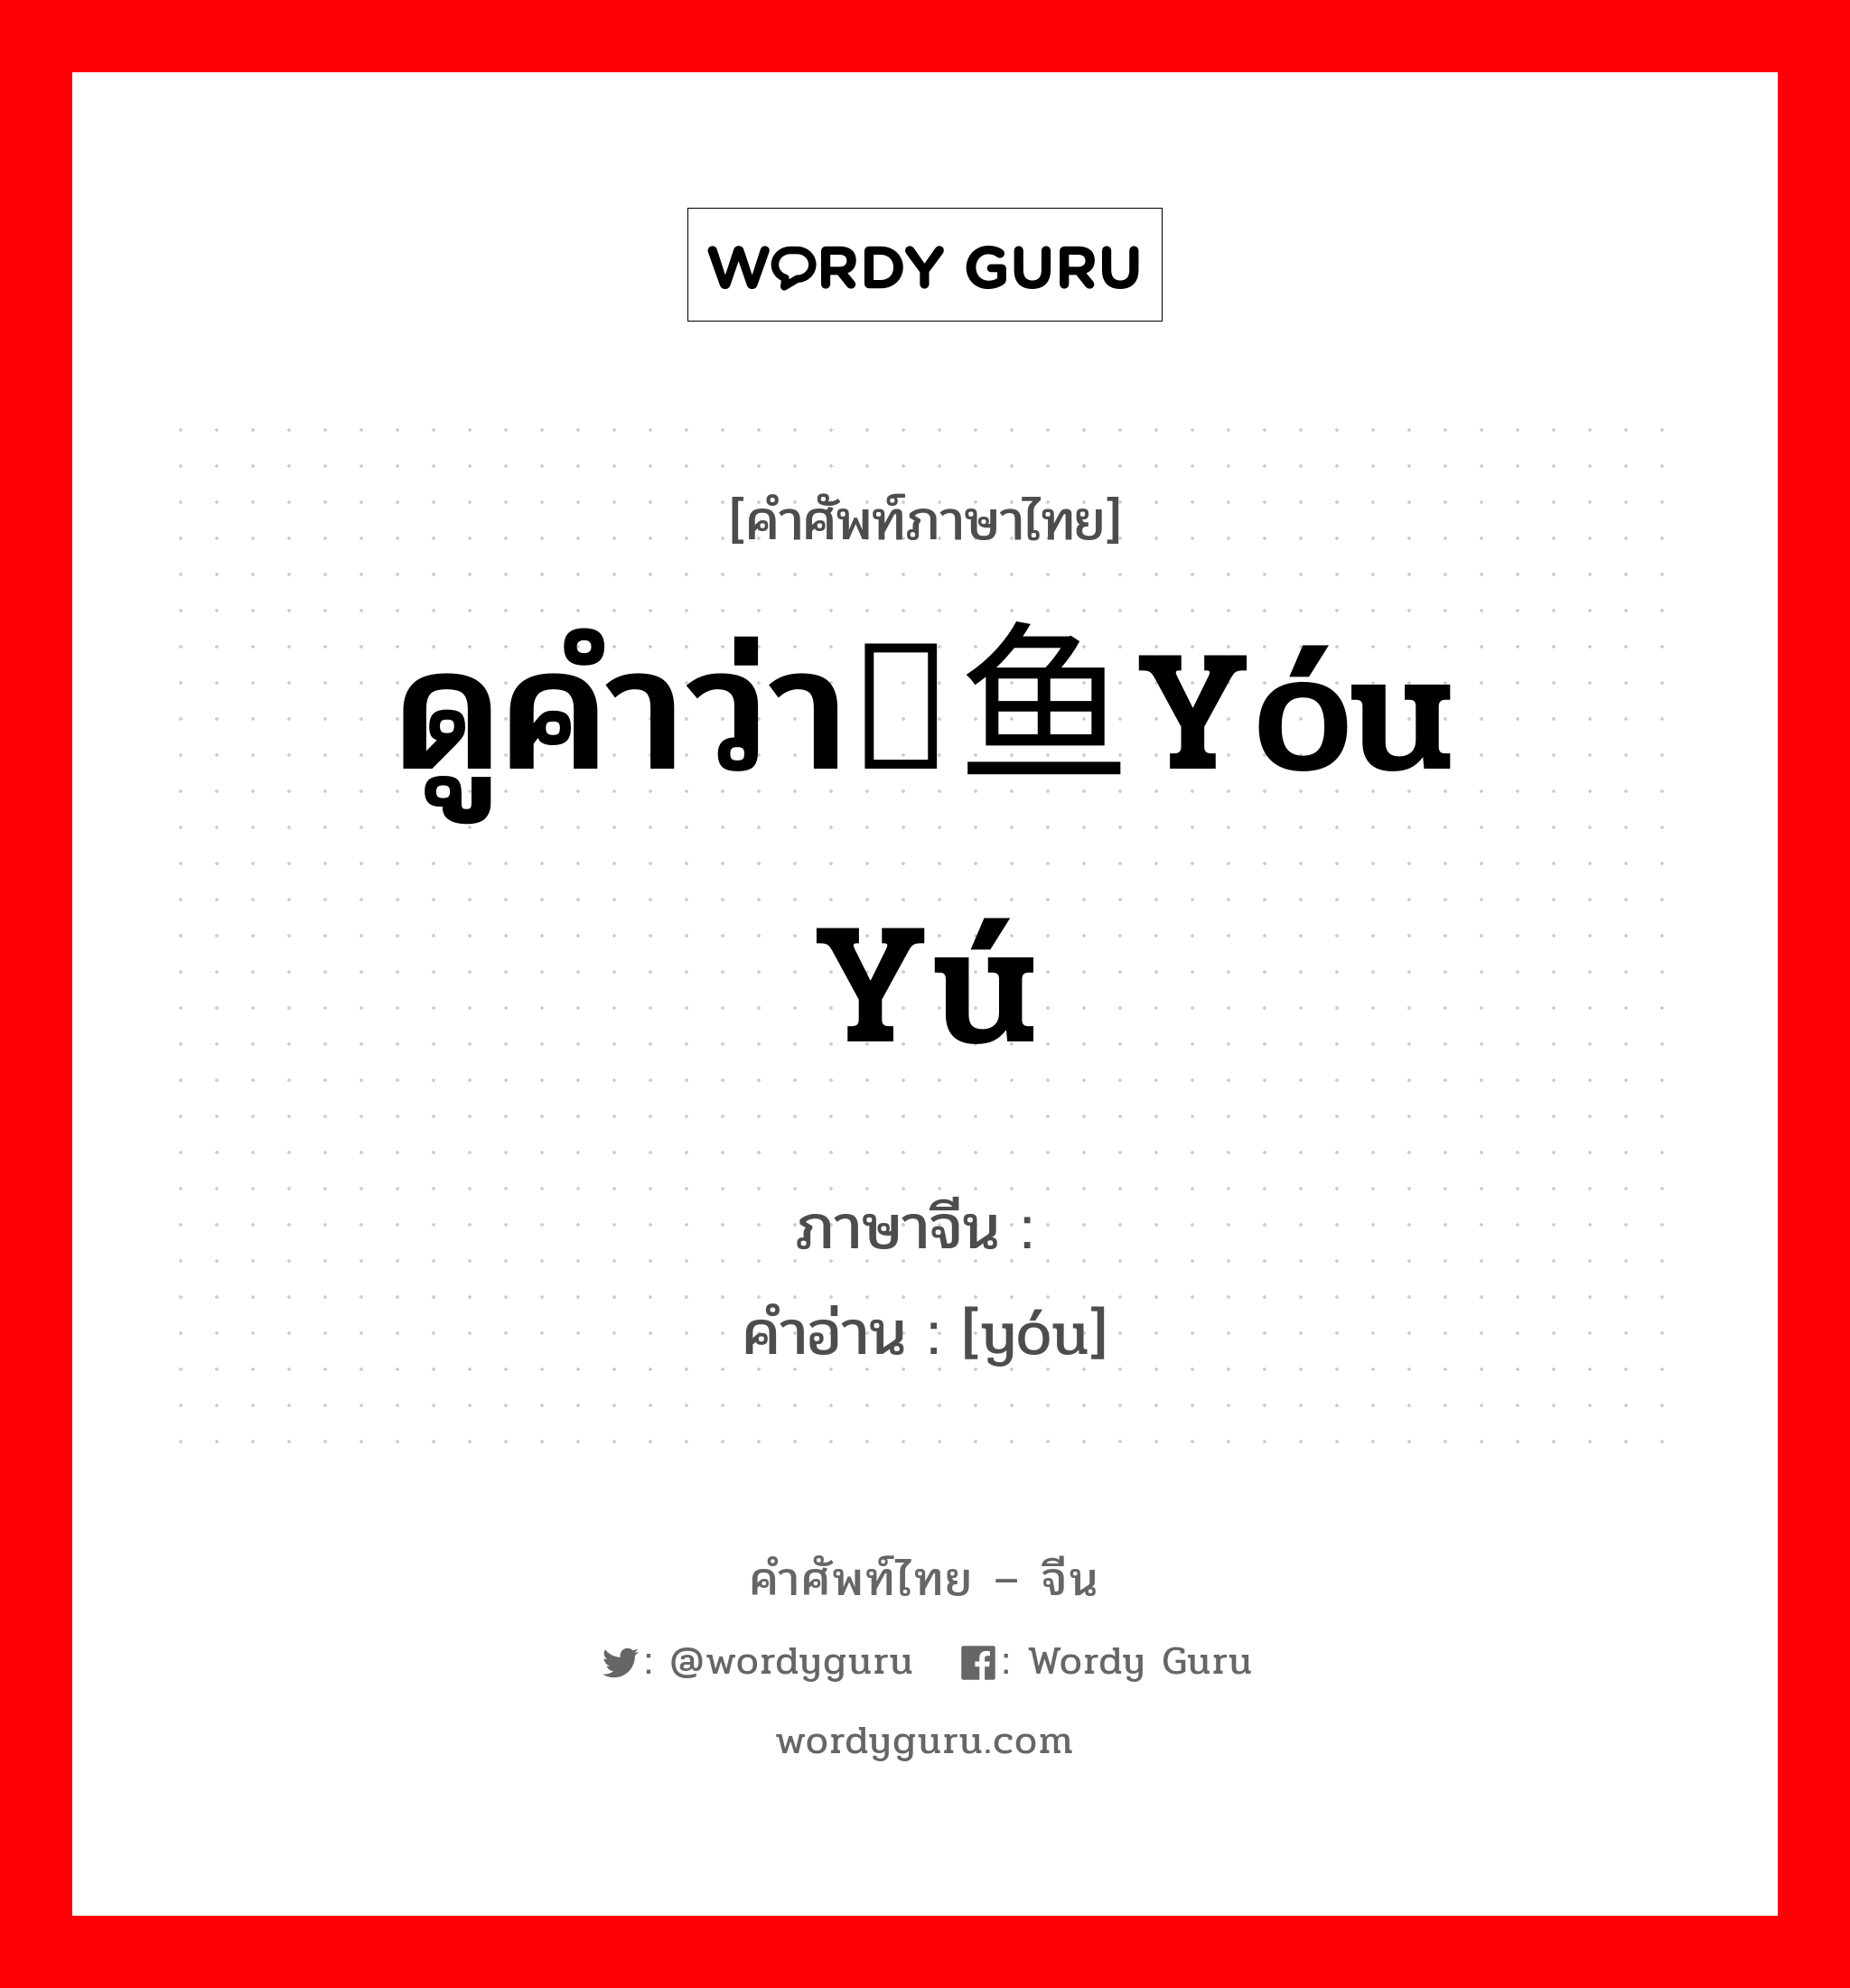 ดูคำว่า鱿鱼yóu yú ภาษาจีนคืออะไร, คำศัพท์ภาษาไทย - จีน ดูคำว่า鱿鱼yóu yú ภาษาจีน 鱿 คำอ่าน [yóu]